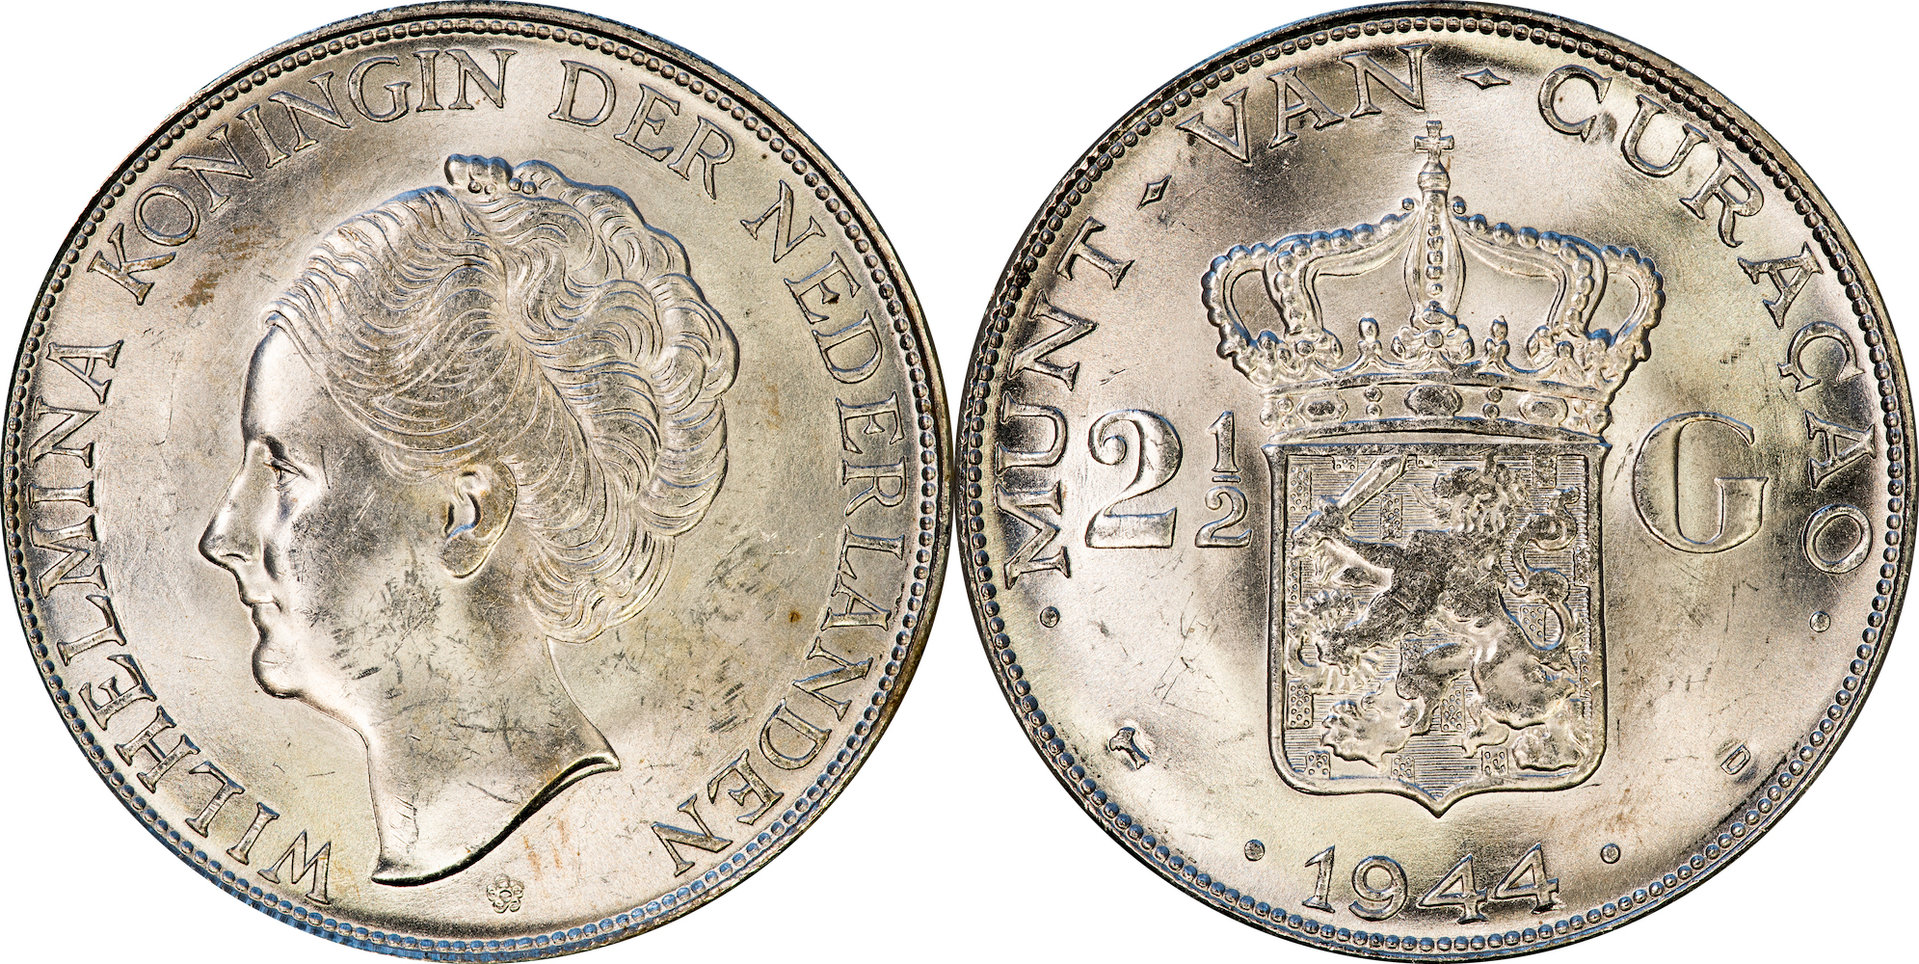 Curacao - 1944 D 2.5 Gulden.jpg